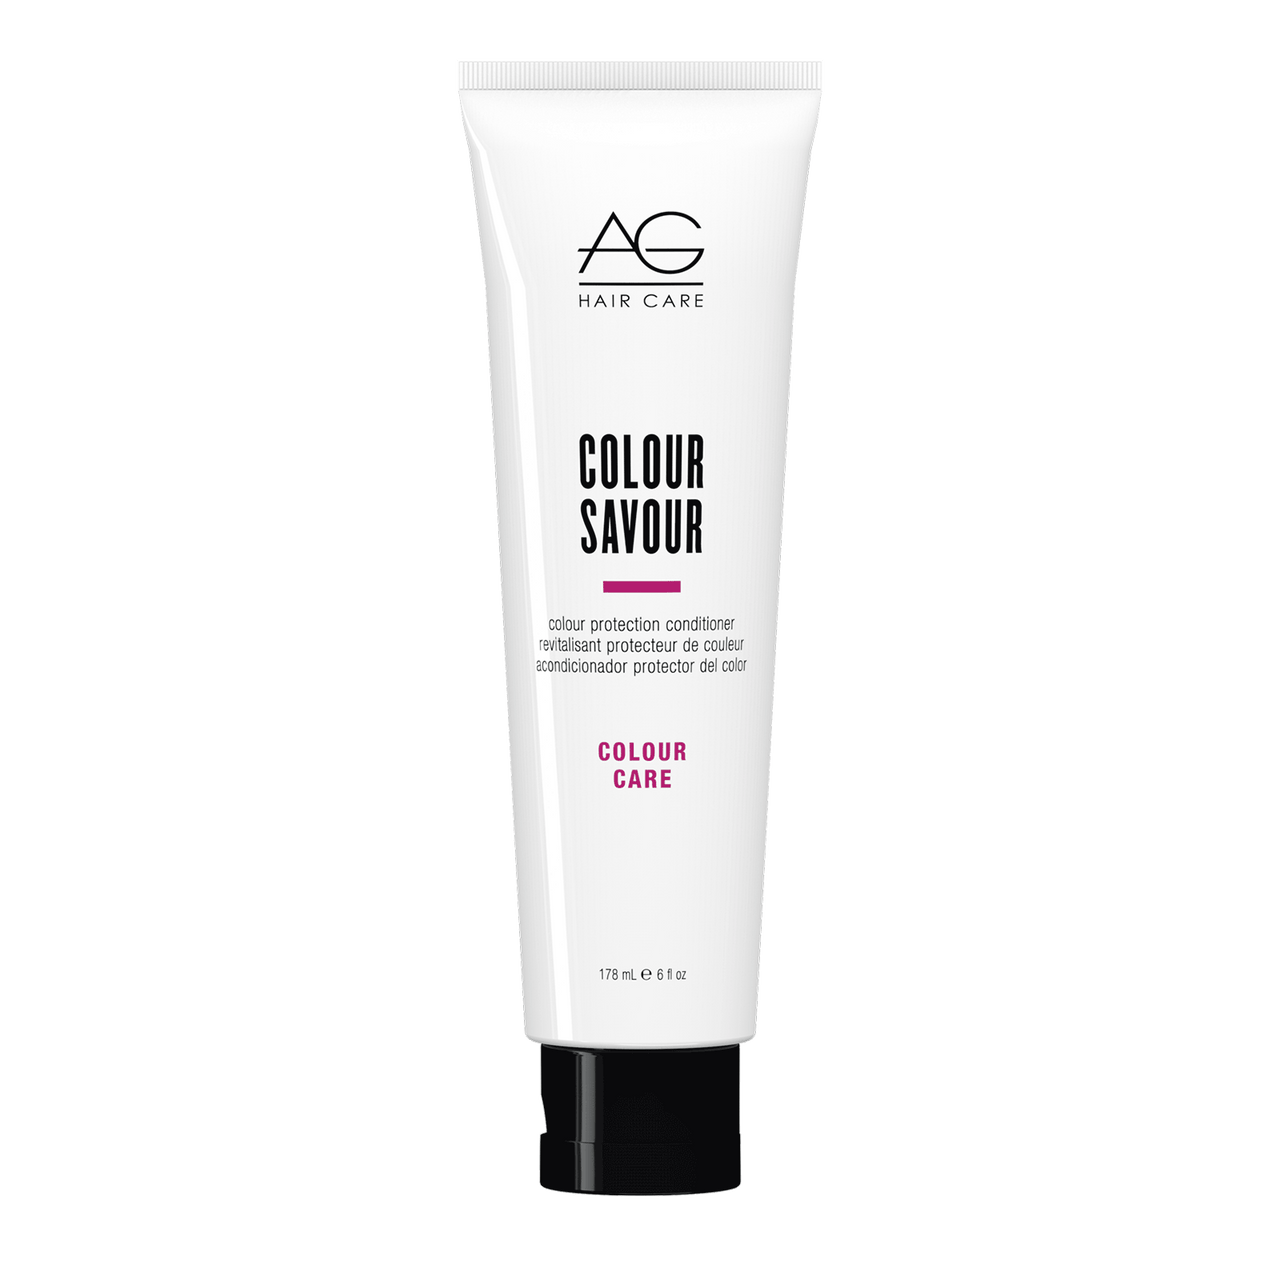 AG Hair Colour Savour Conditioner 6 fl oz